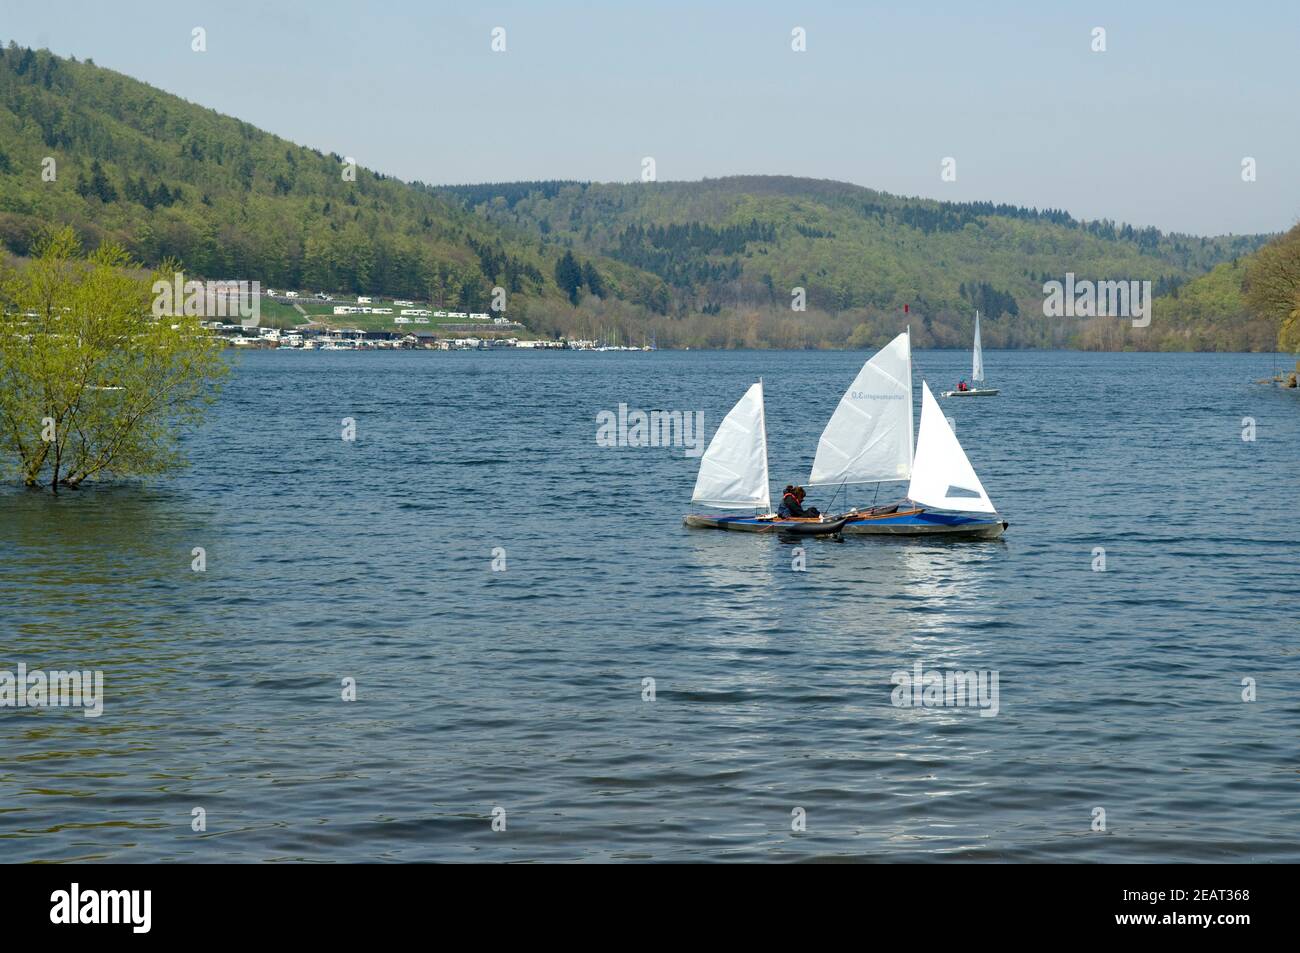 Edersee, Rehbach, Bucht, Segelboote Foto Stock